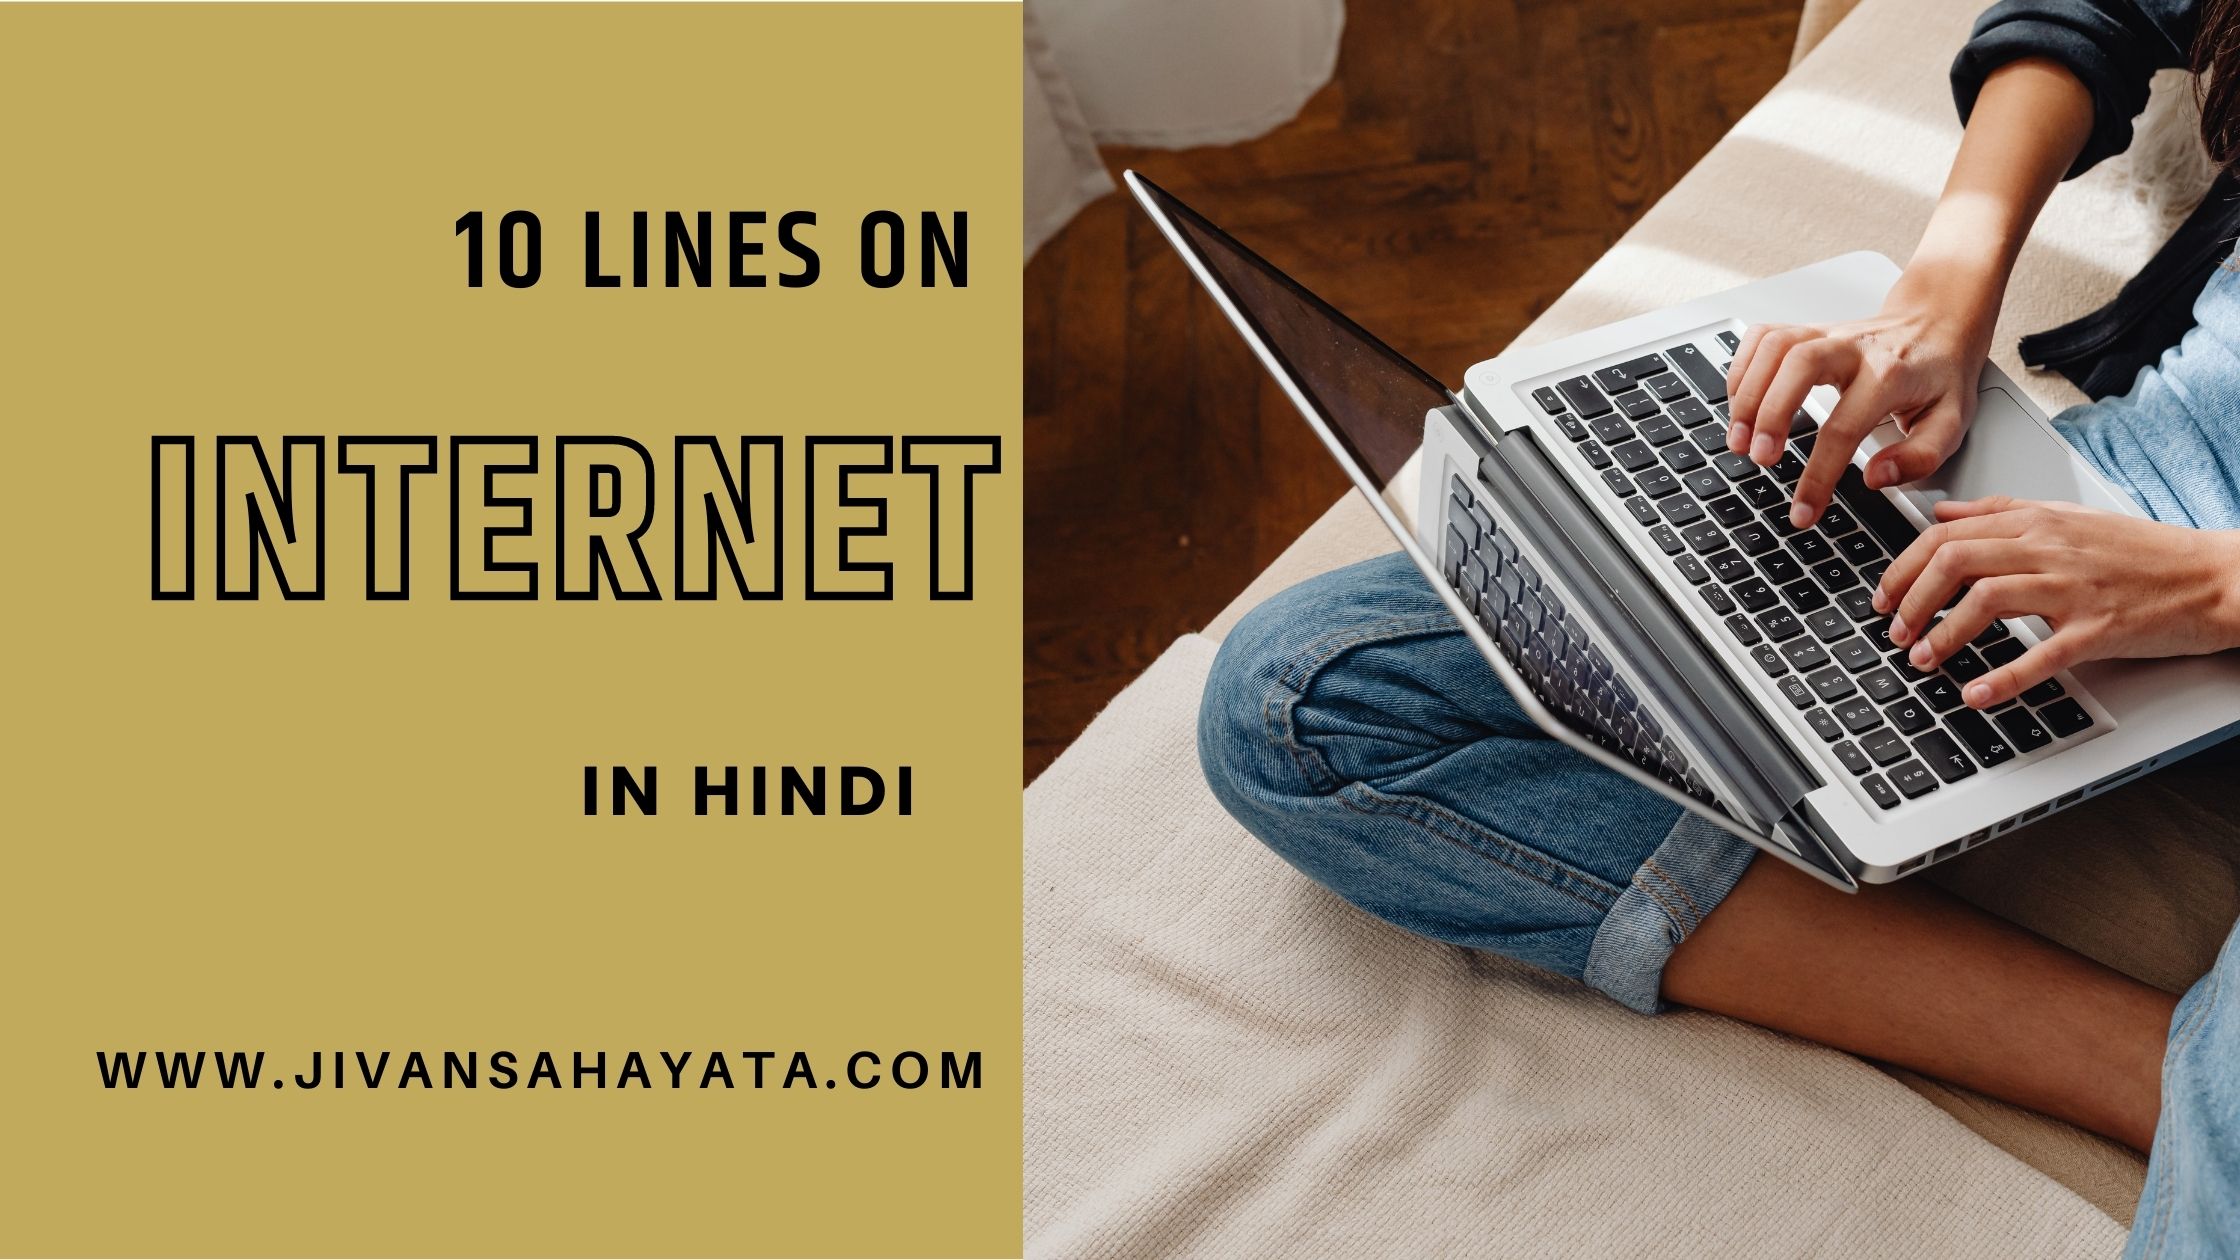 इंटरनेट पर 10 लाइन - 10 lines on Internet in Hindi